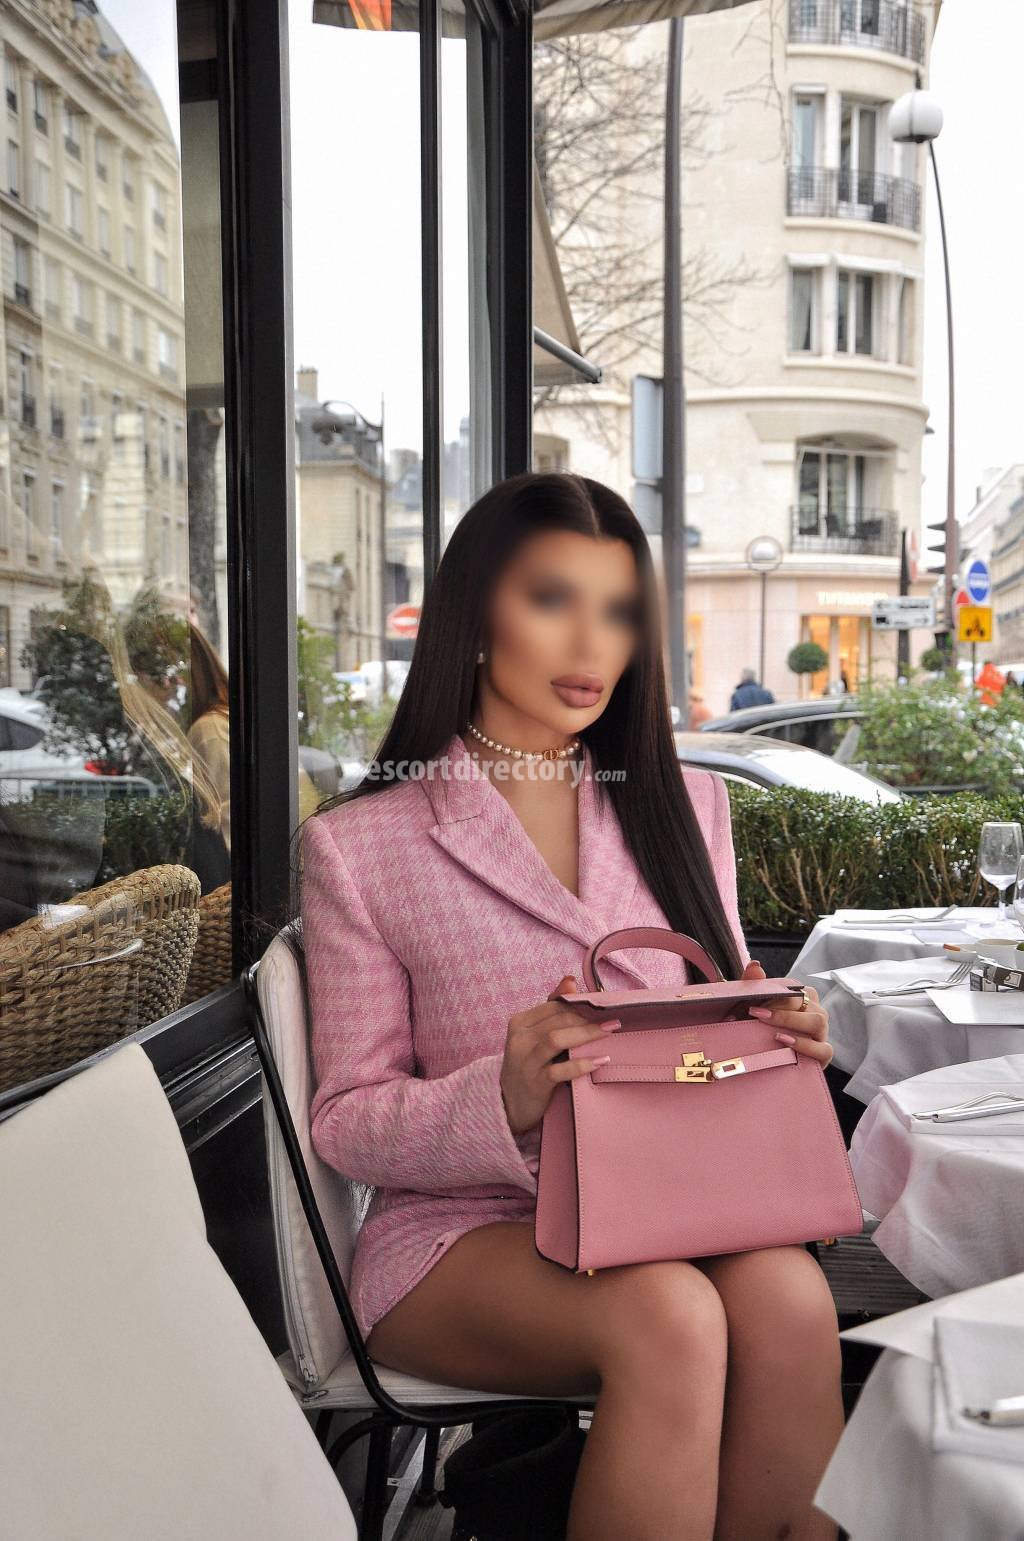 Ayah-Bella Modelo/Ex-modelo escort in Paris offers Ejaculação no rosto services